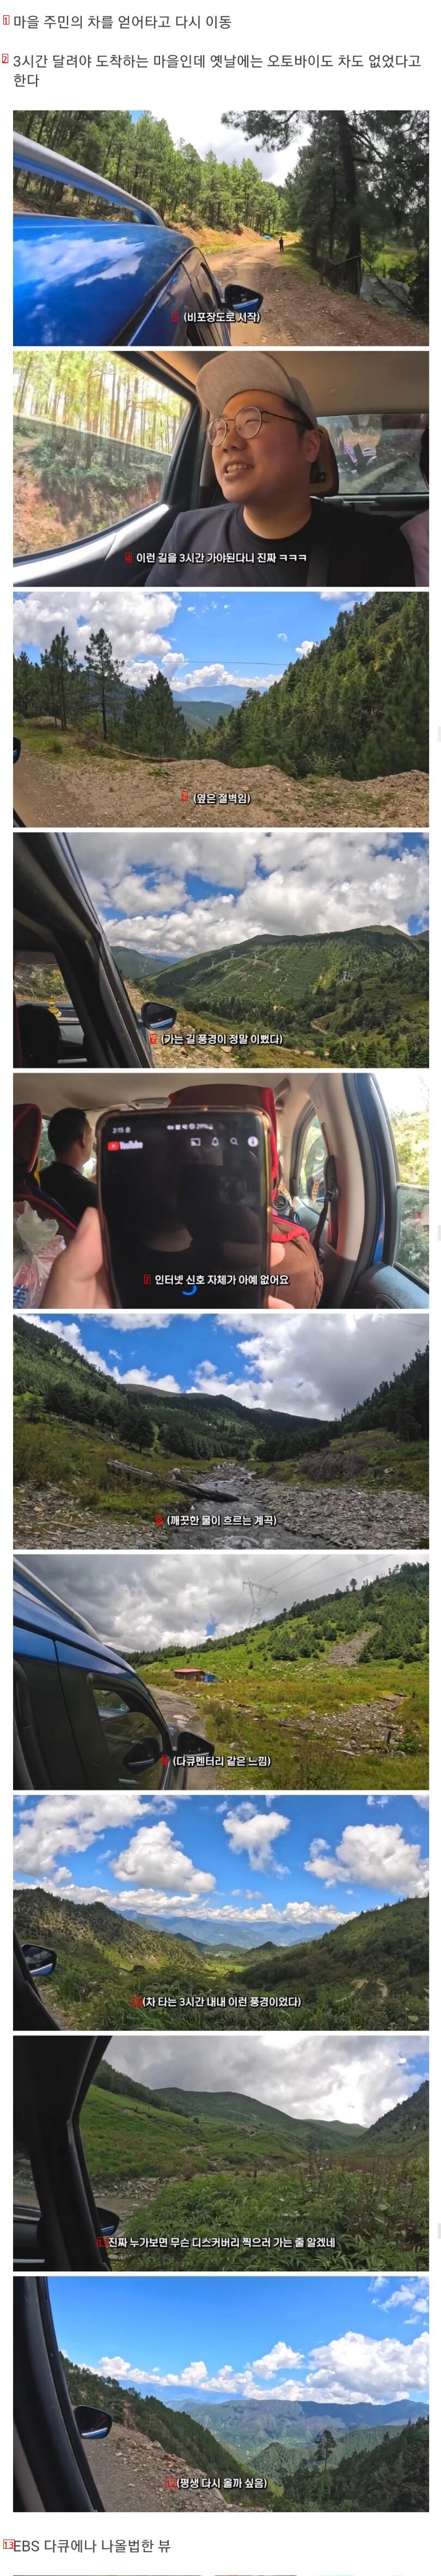 中国の奥深い田舎町を訪れた旅行YouTuber